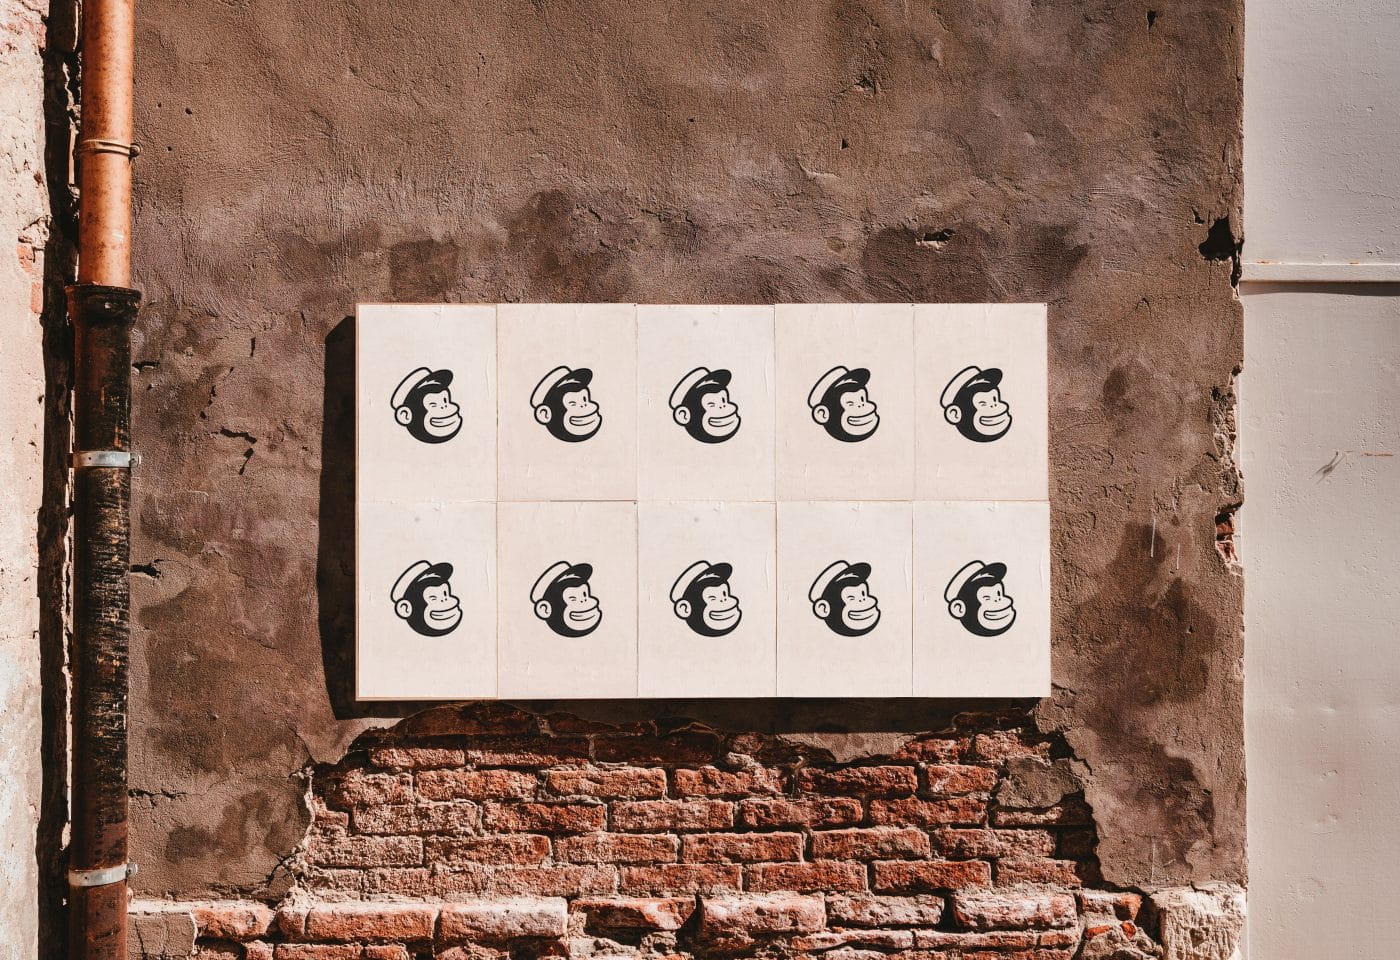 Un mur avec le logo de Mailchimp.